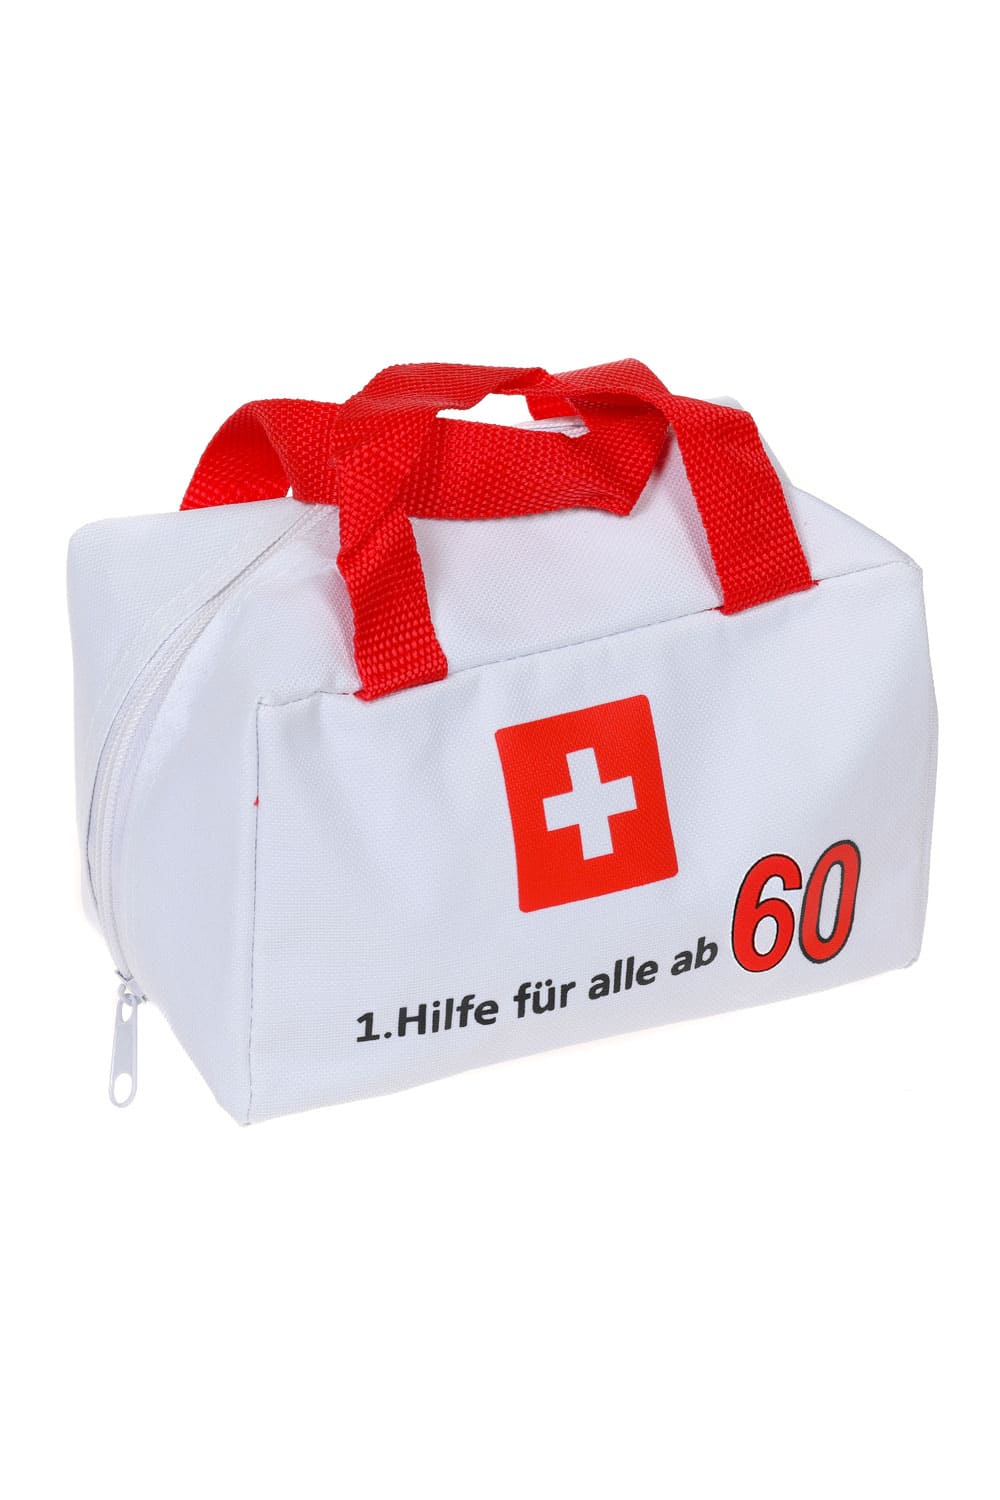 Eine witzige Geschenk Verpackung für den 60. Geburtstag. Die Notfall Tasche ist bedruckt mit der Geburtstagszahl und dem Spruch: 1. Hilfe fuer alle ab 60. Die Erste Hilfe Tasche kann beliebig gefuellt werden und laesst der Kreativitaet keine Grenzen. 